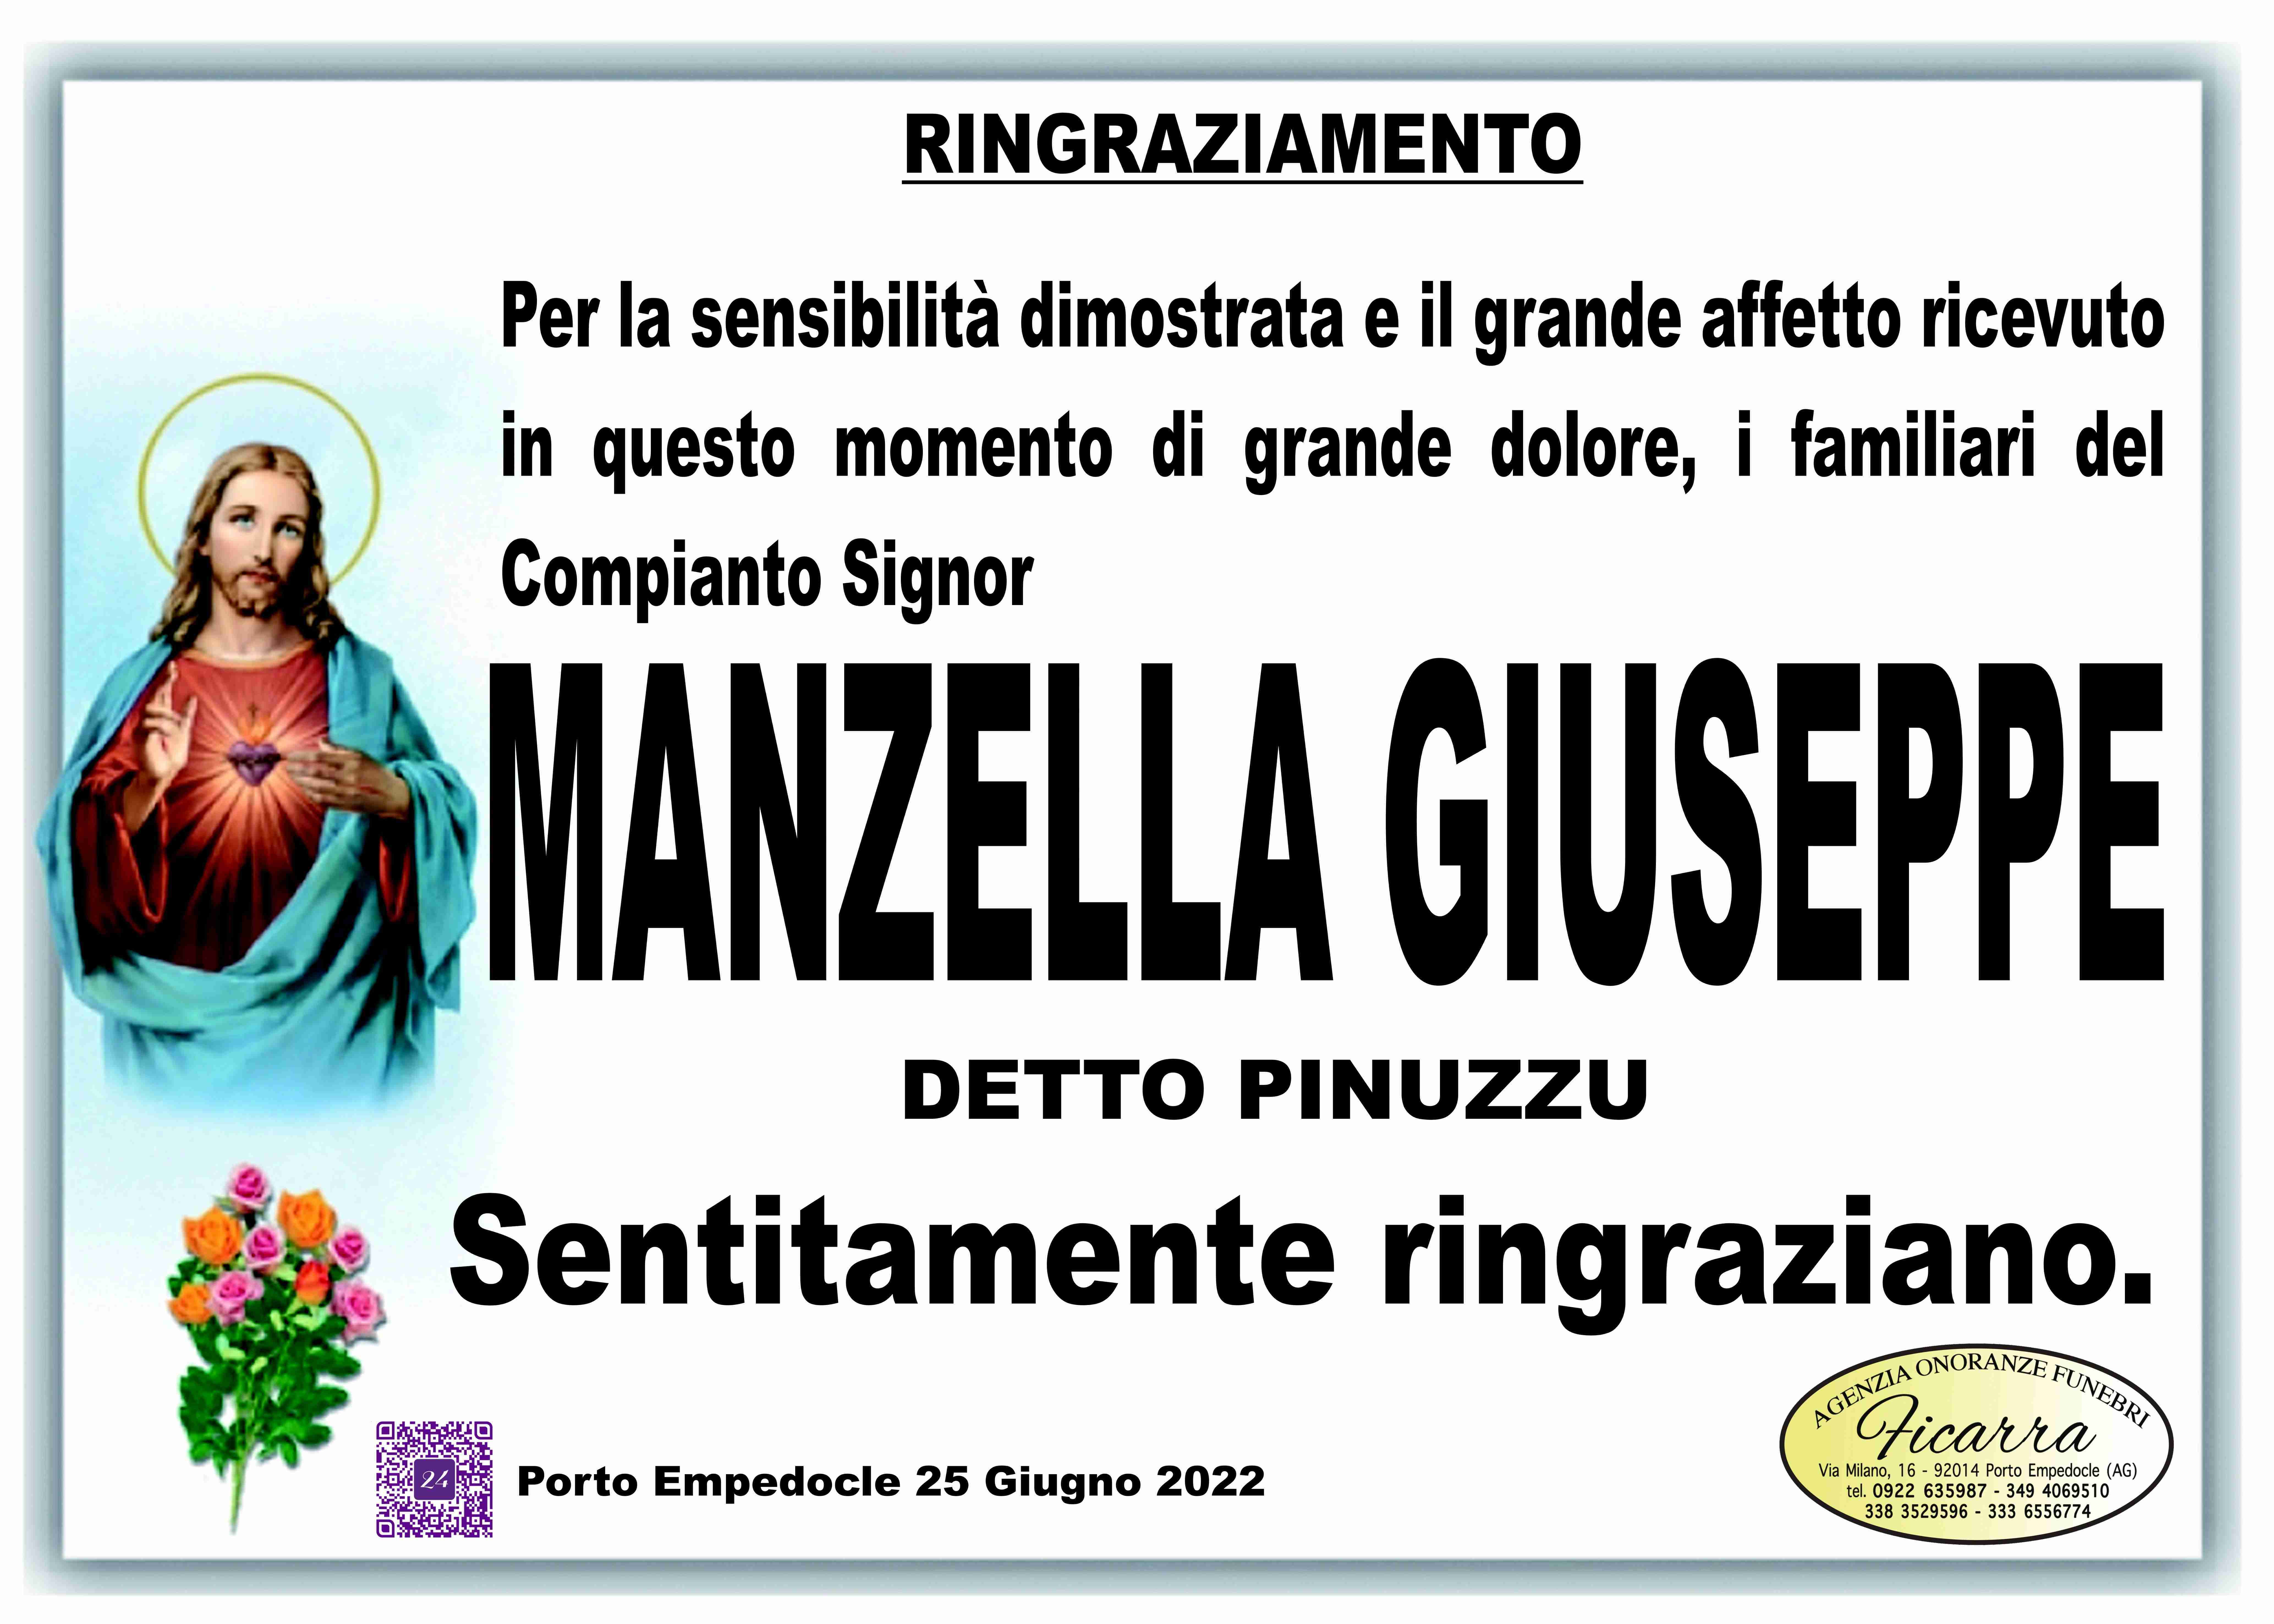 Giuseppe Manzella